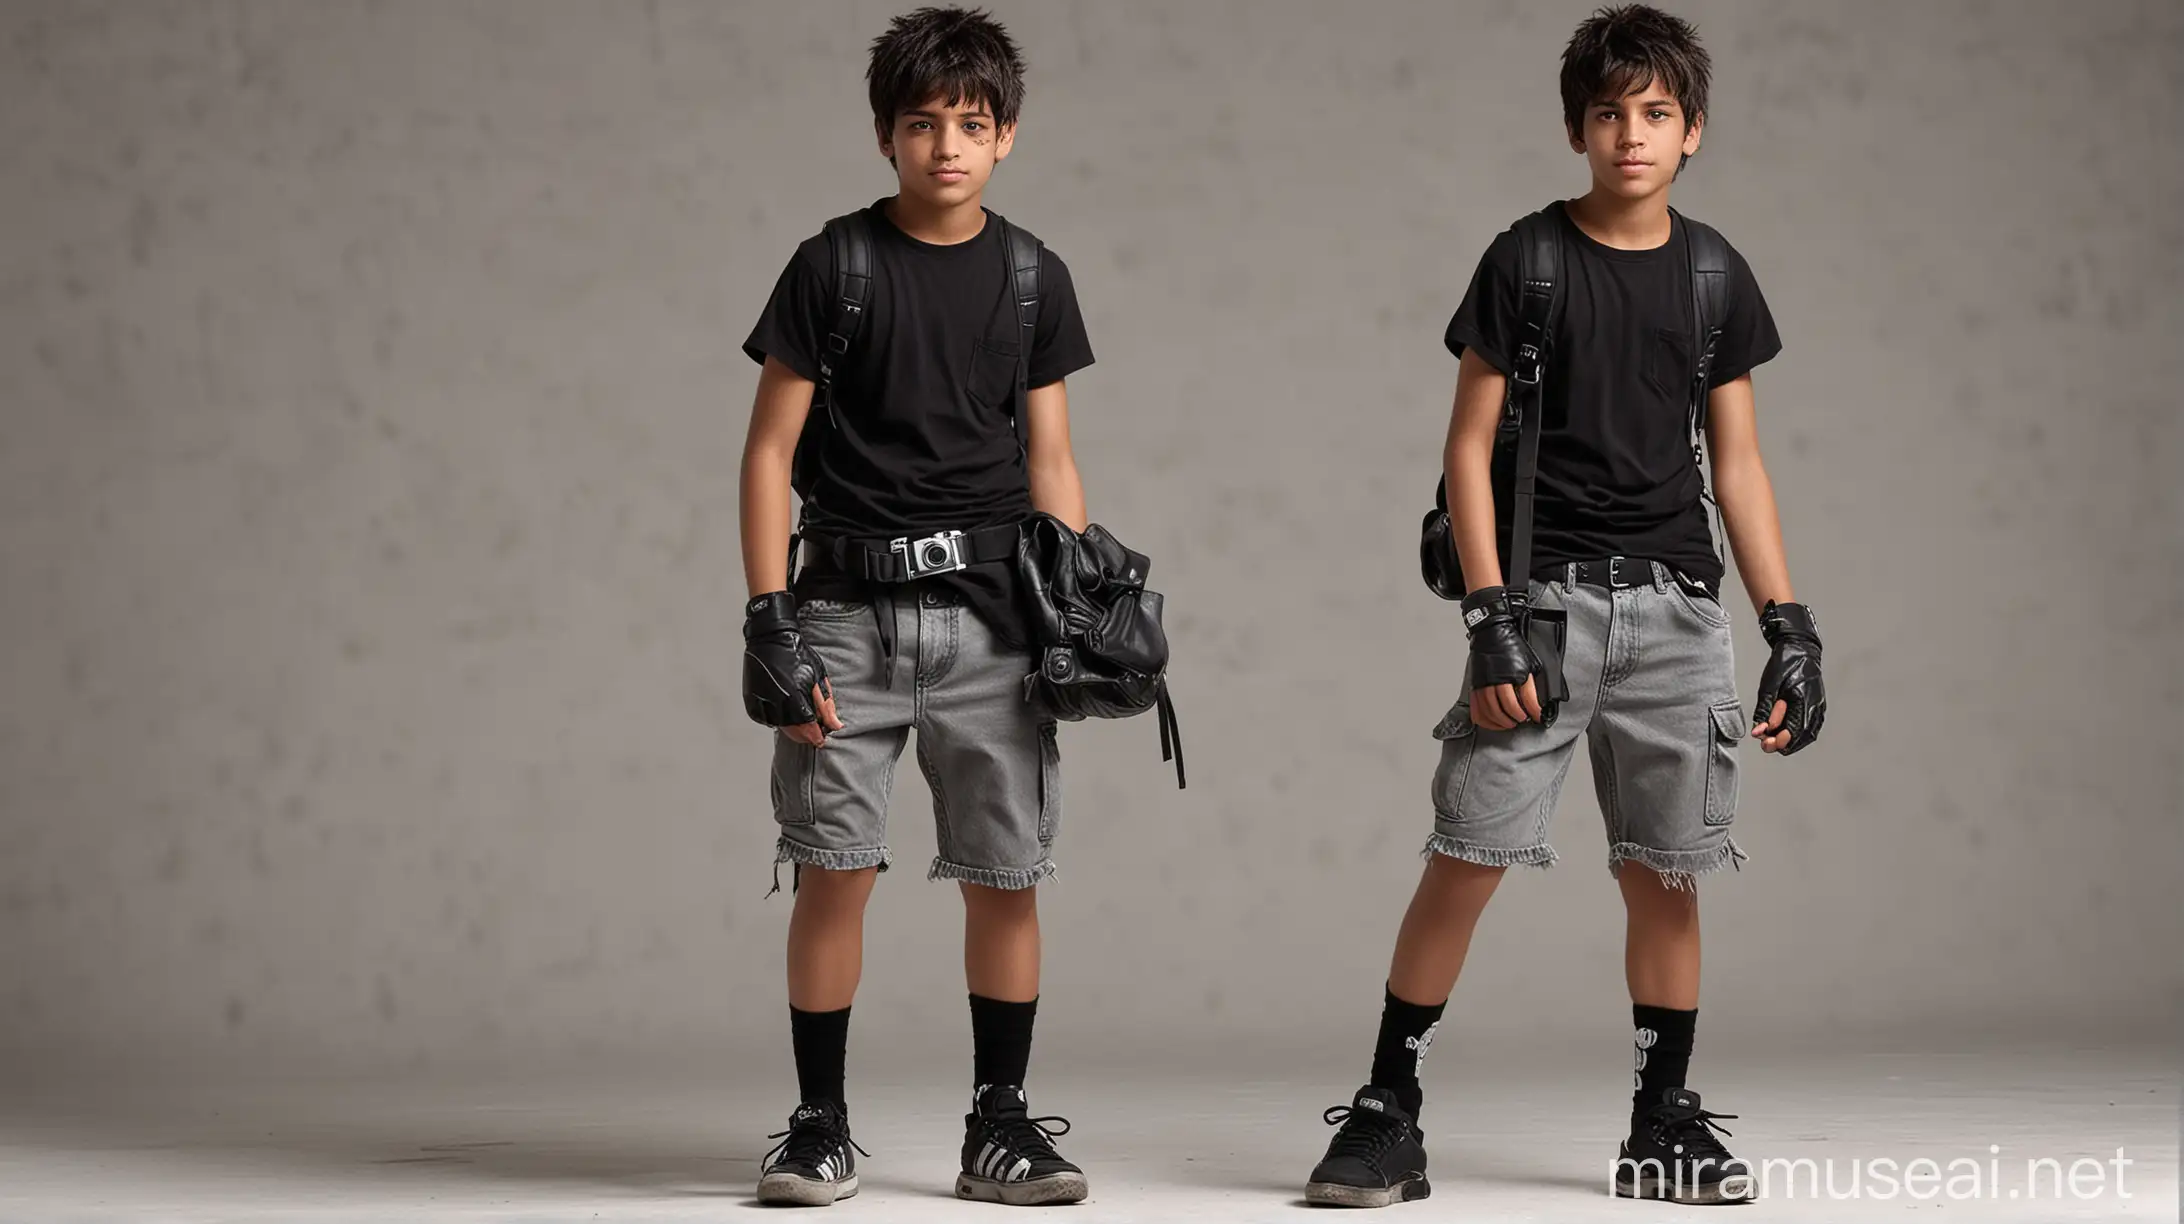 Hispanic Teenage Photographer in Urban Streetwear with Camera